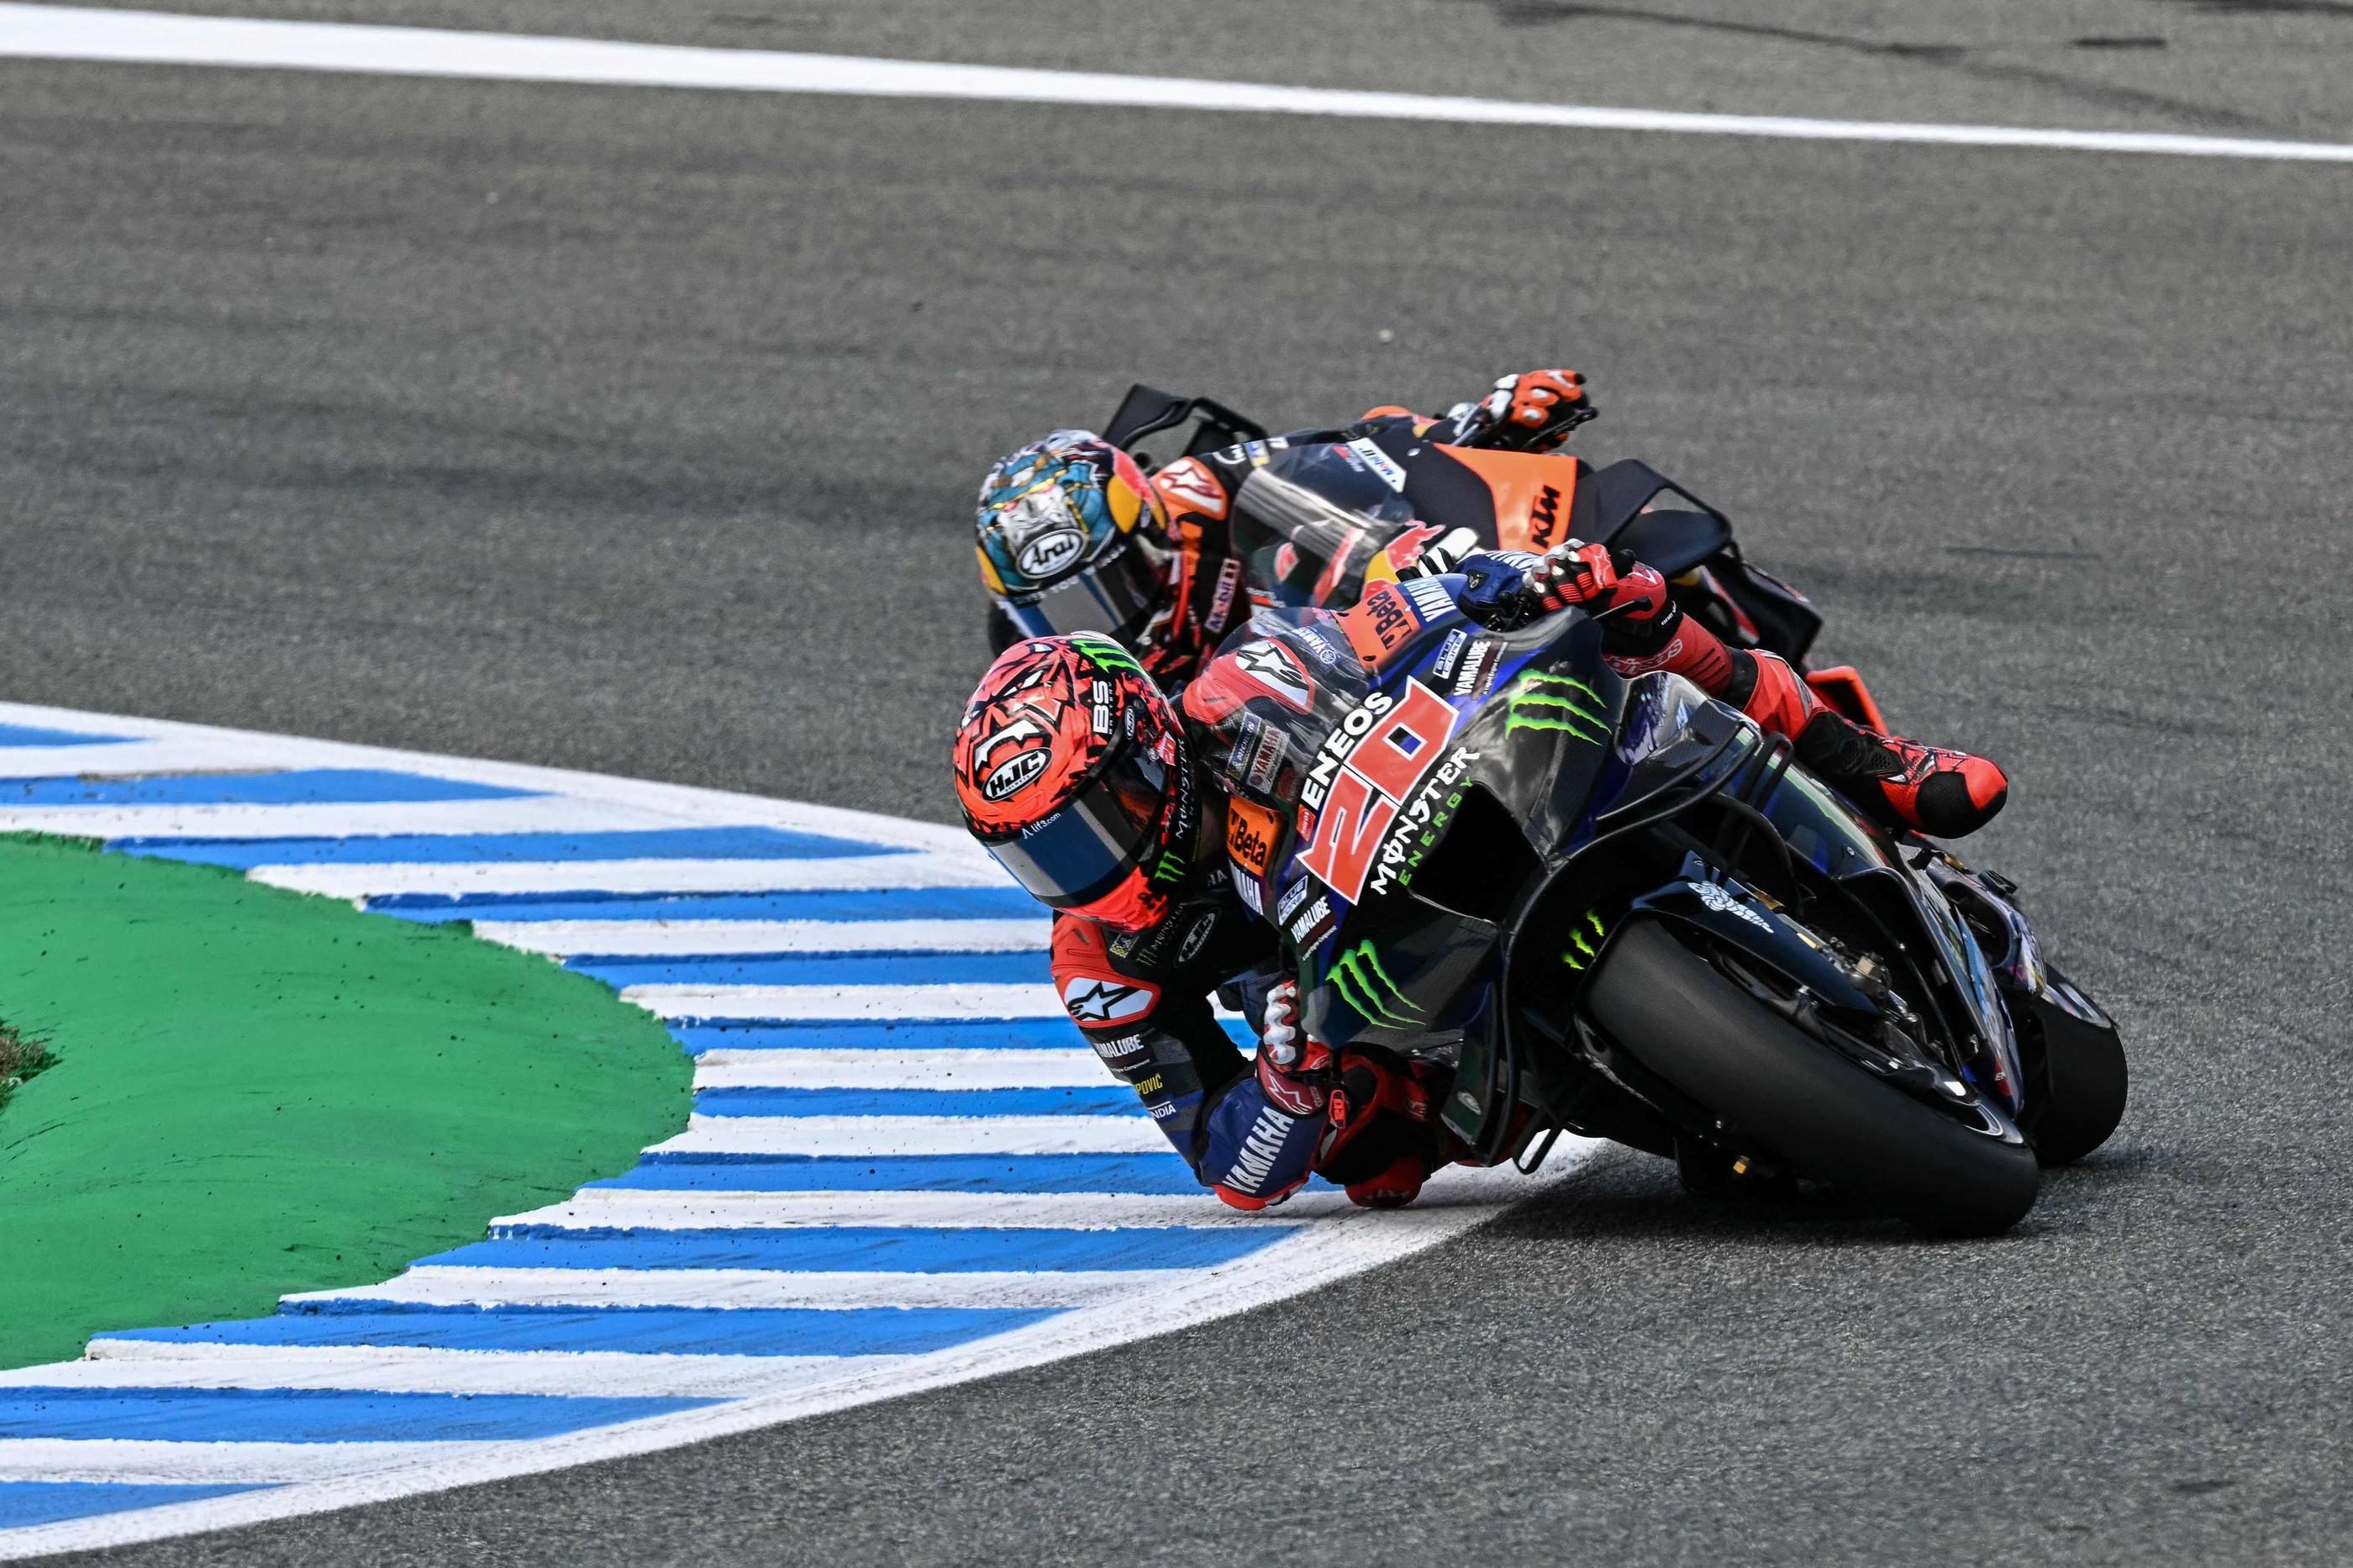 Le Grand Prix d'Espagne en MotoGP aura lieu le dimanche 27 avril. AFP/Javier Soriano